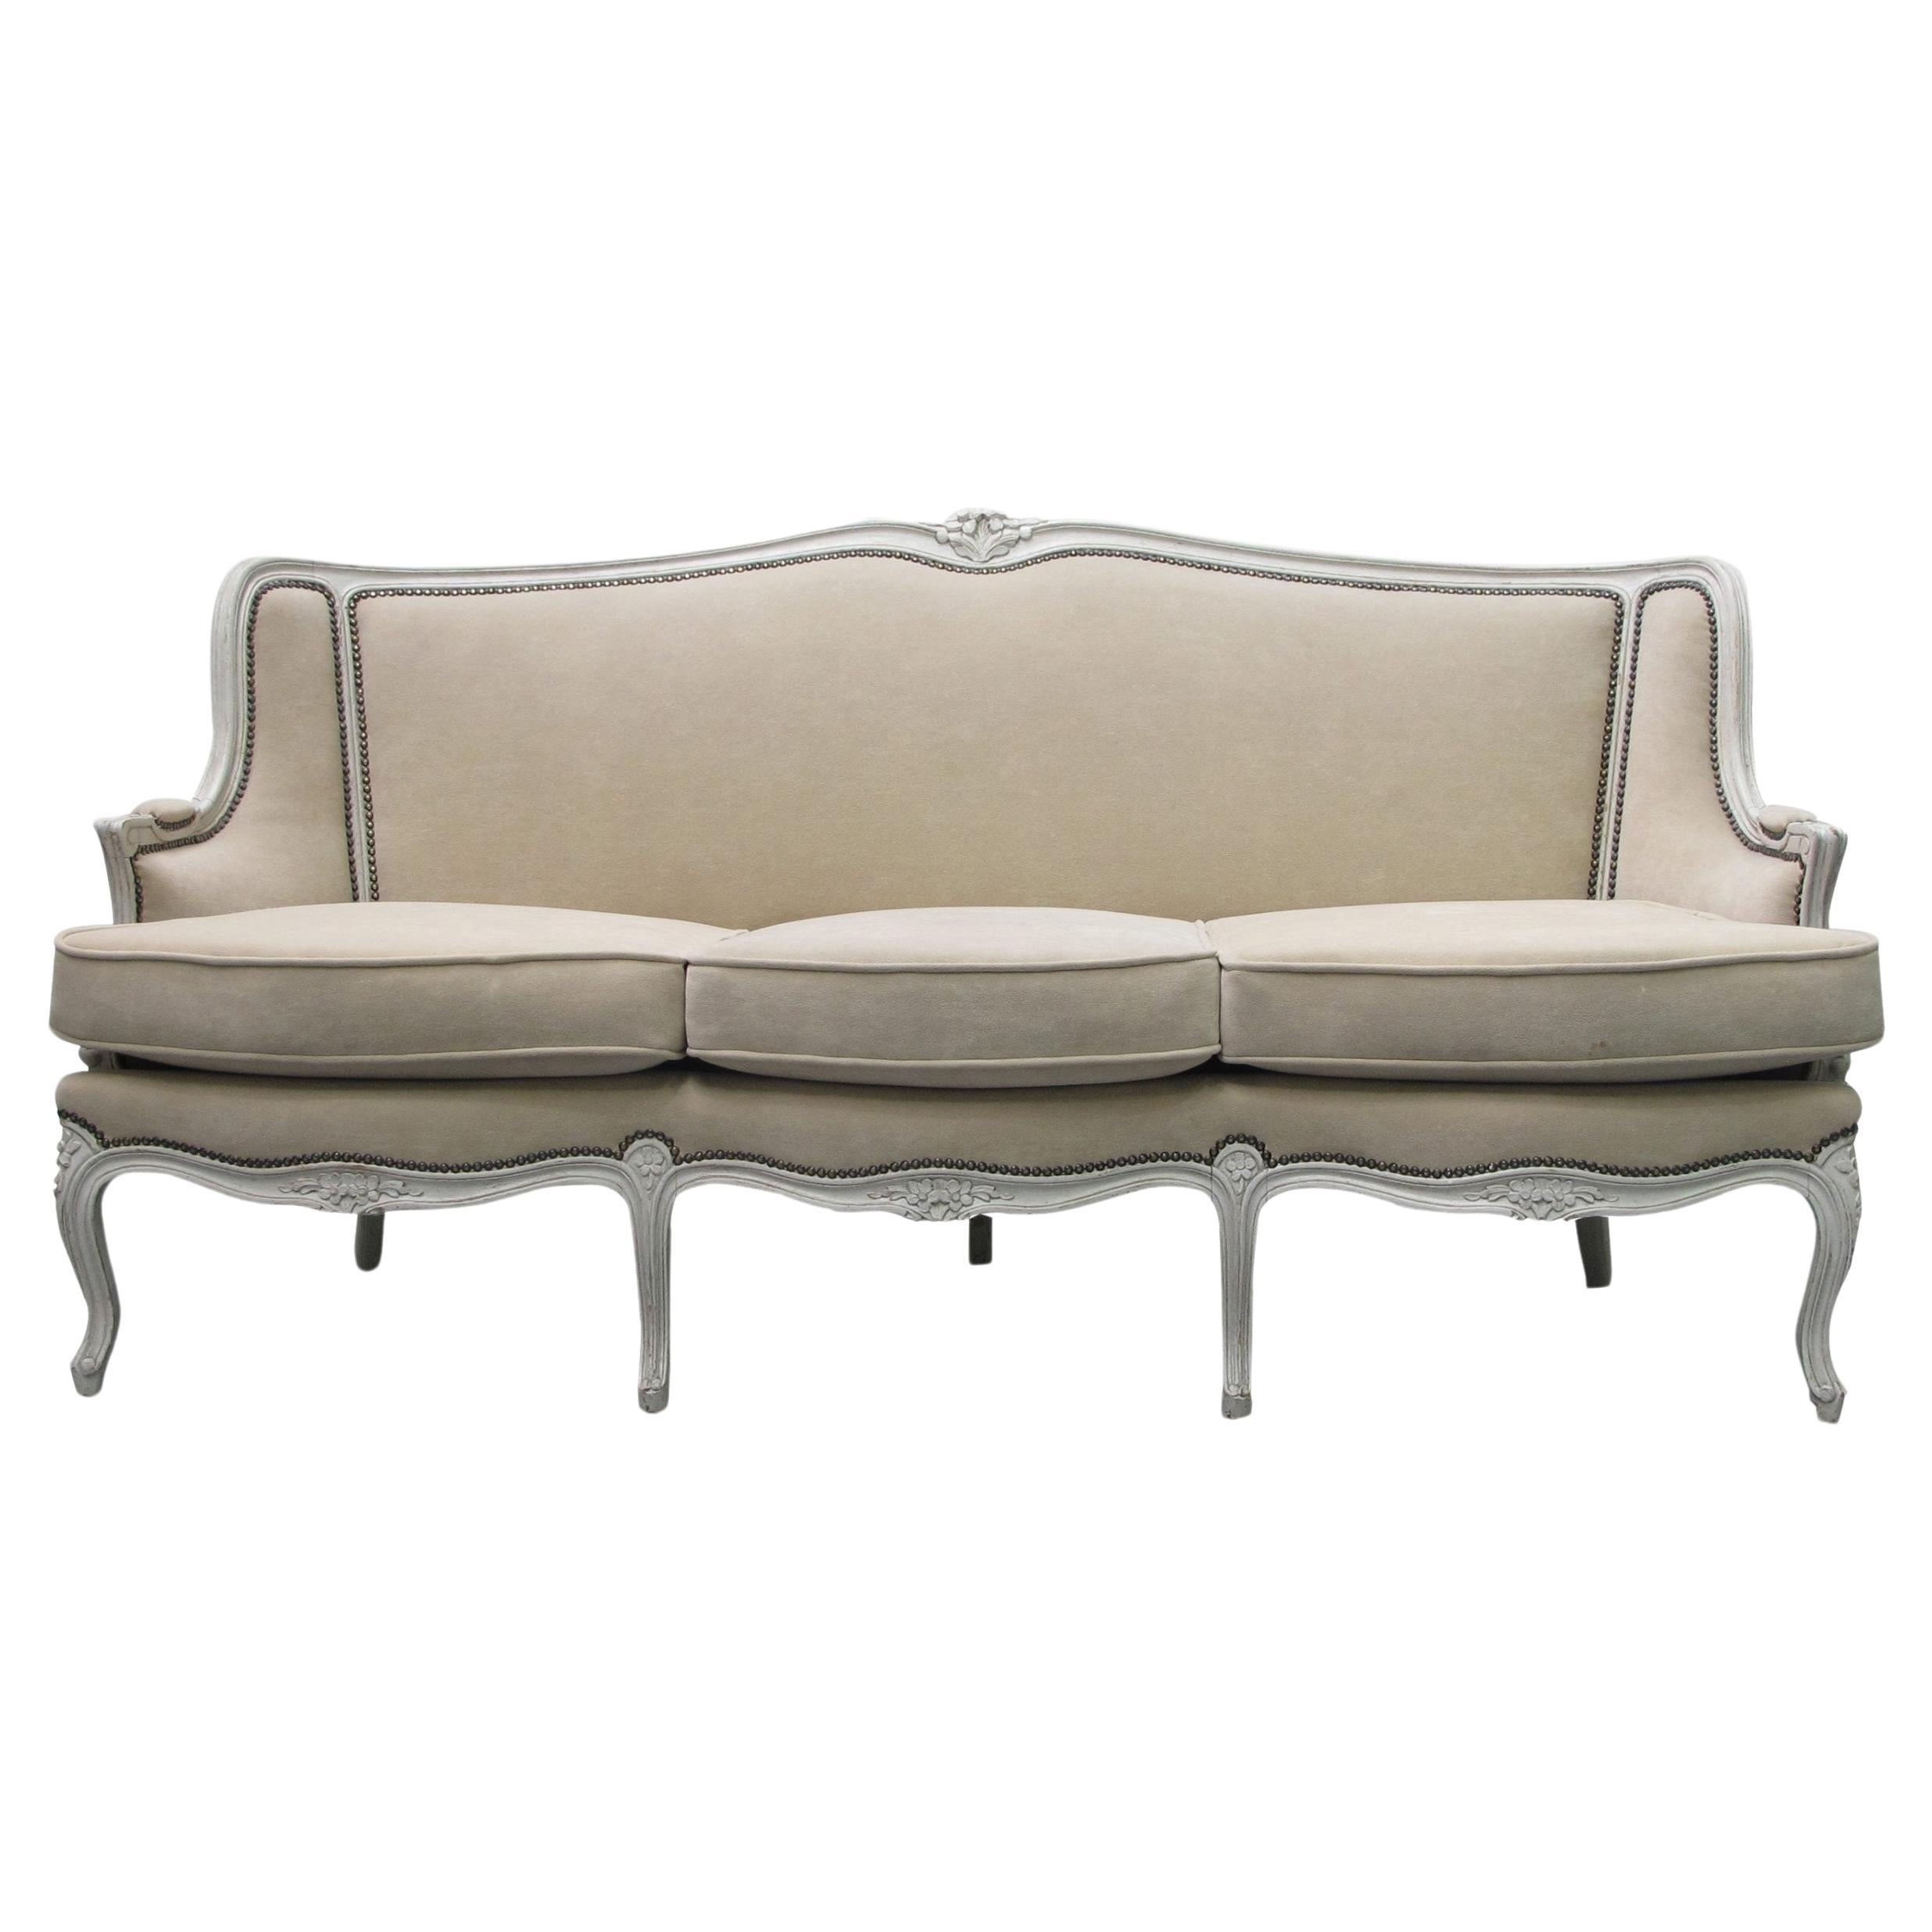 Französisches Dreisitzer-Sofa des frühen 20. Jahrhunderts, Louis XV.-Stil, mit lackiertem Rahmen